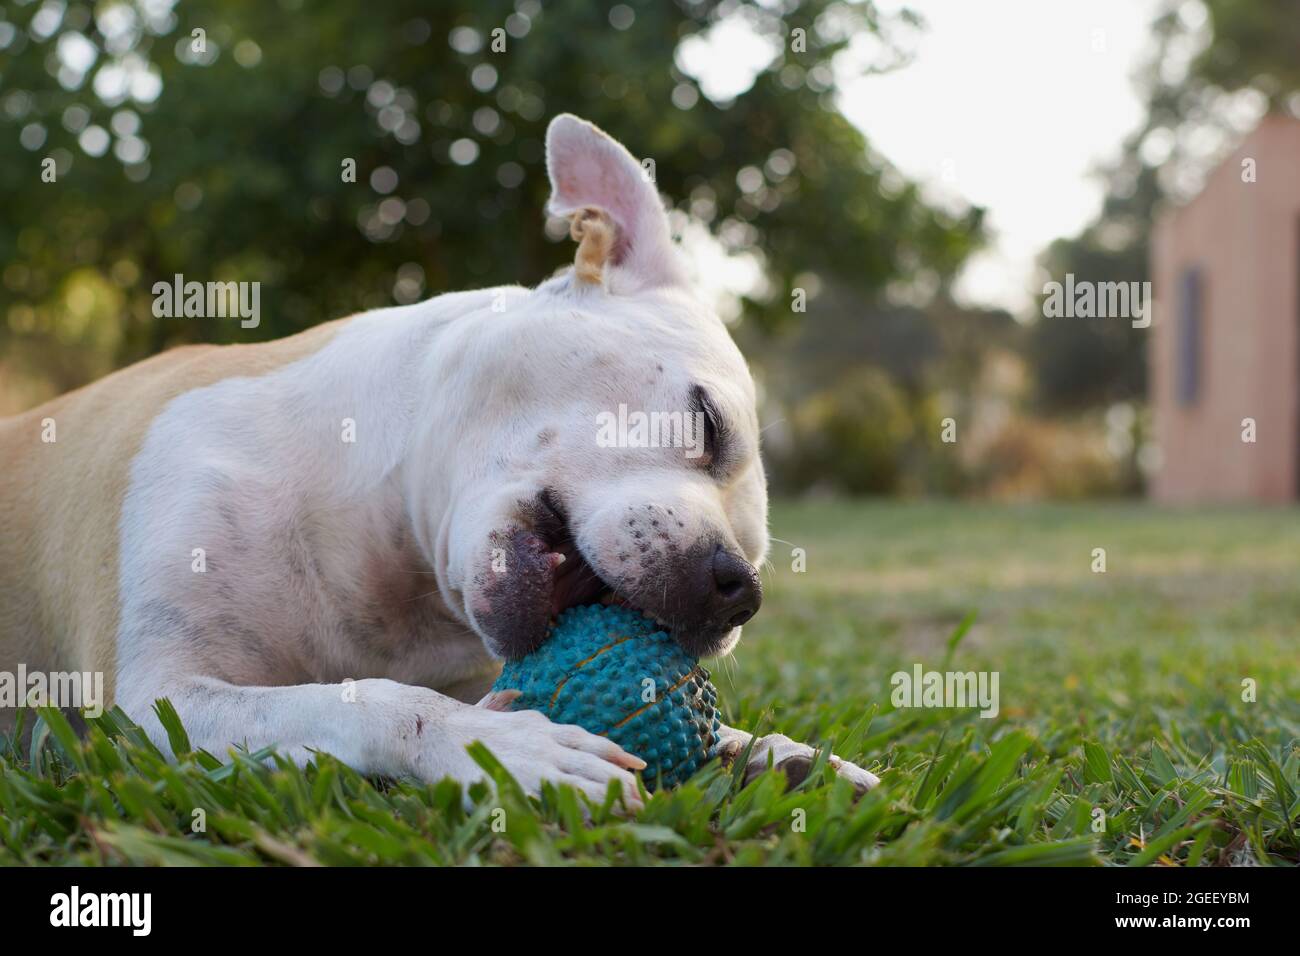 Chien terrier américain brun et blanc du staffordshire jouant dans un jardin avec une boule bleue Banque D'Images